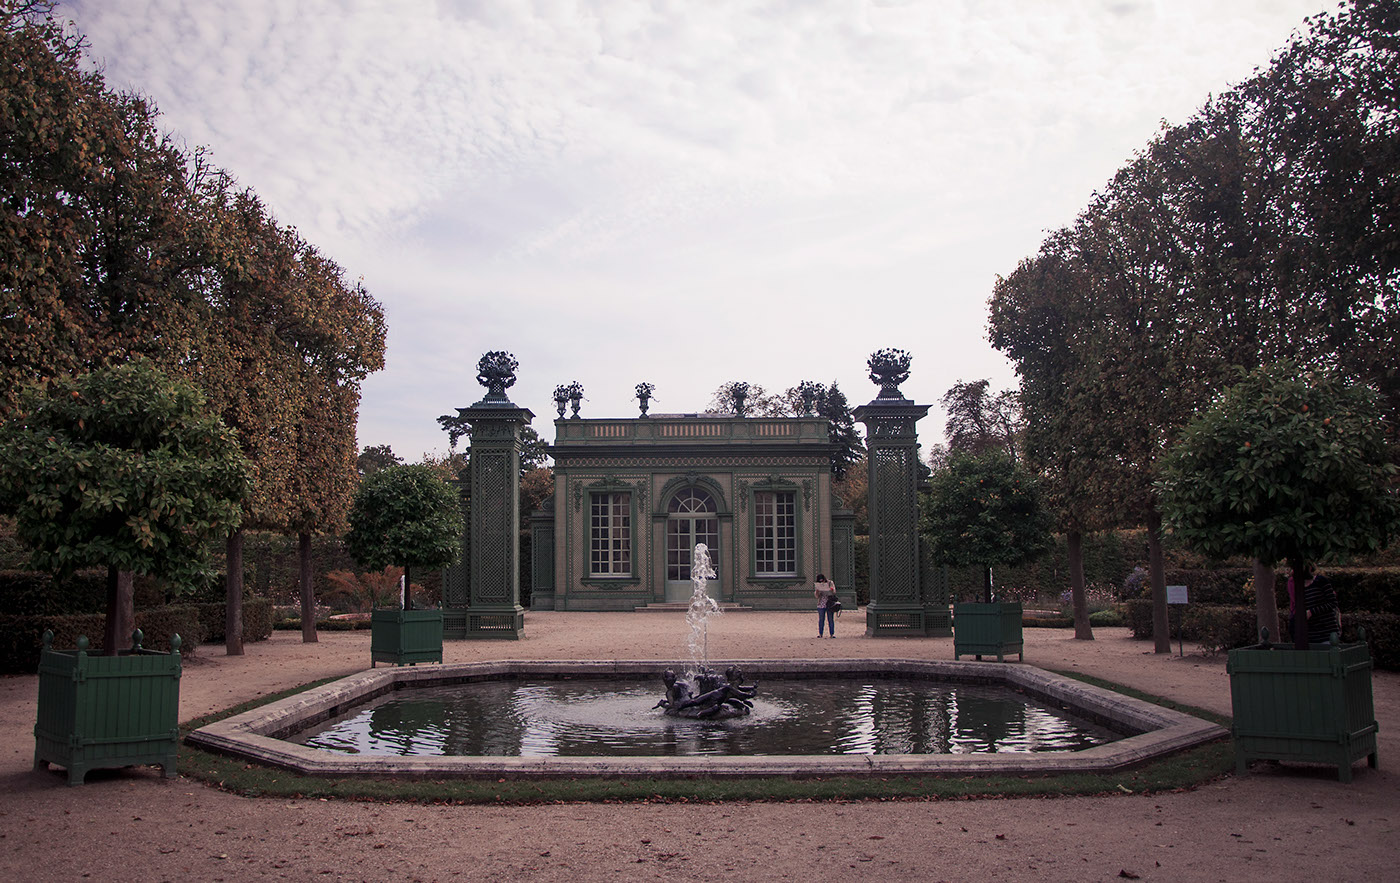 versailles Paris sofia hassan reportage france Nikon Travel garden palace chateau people